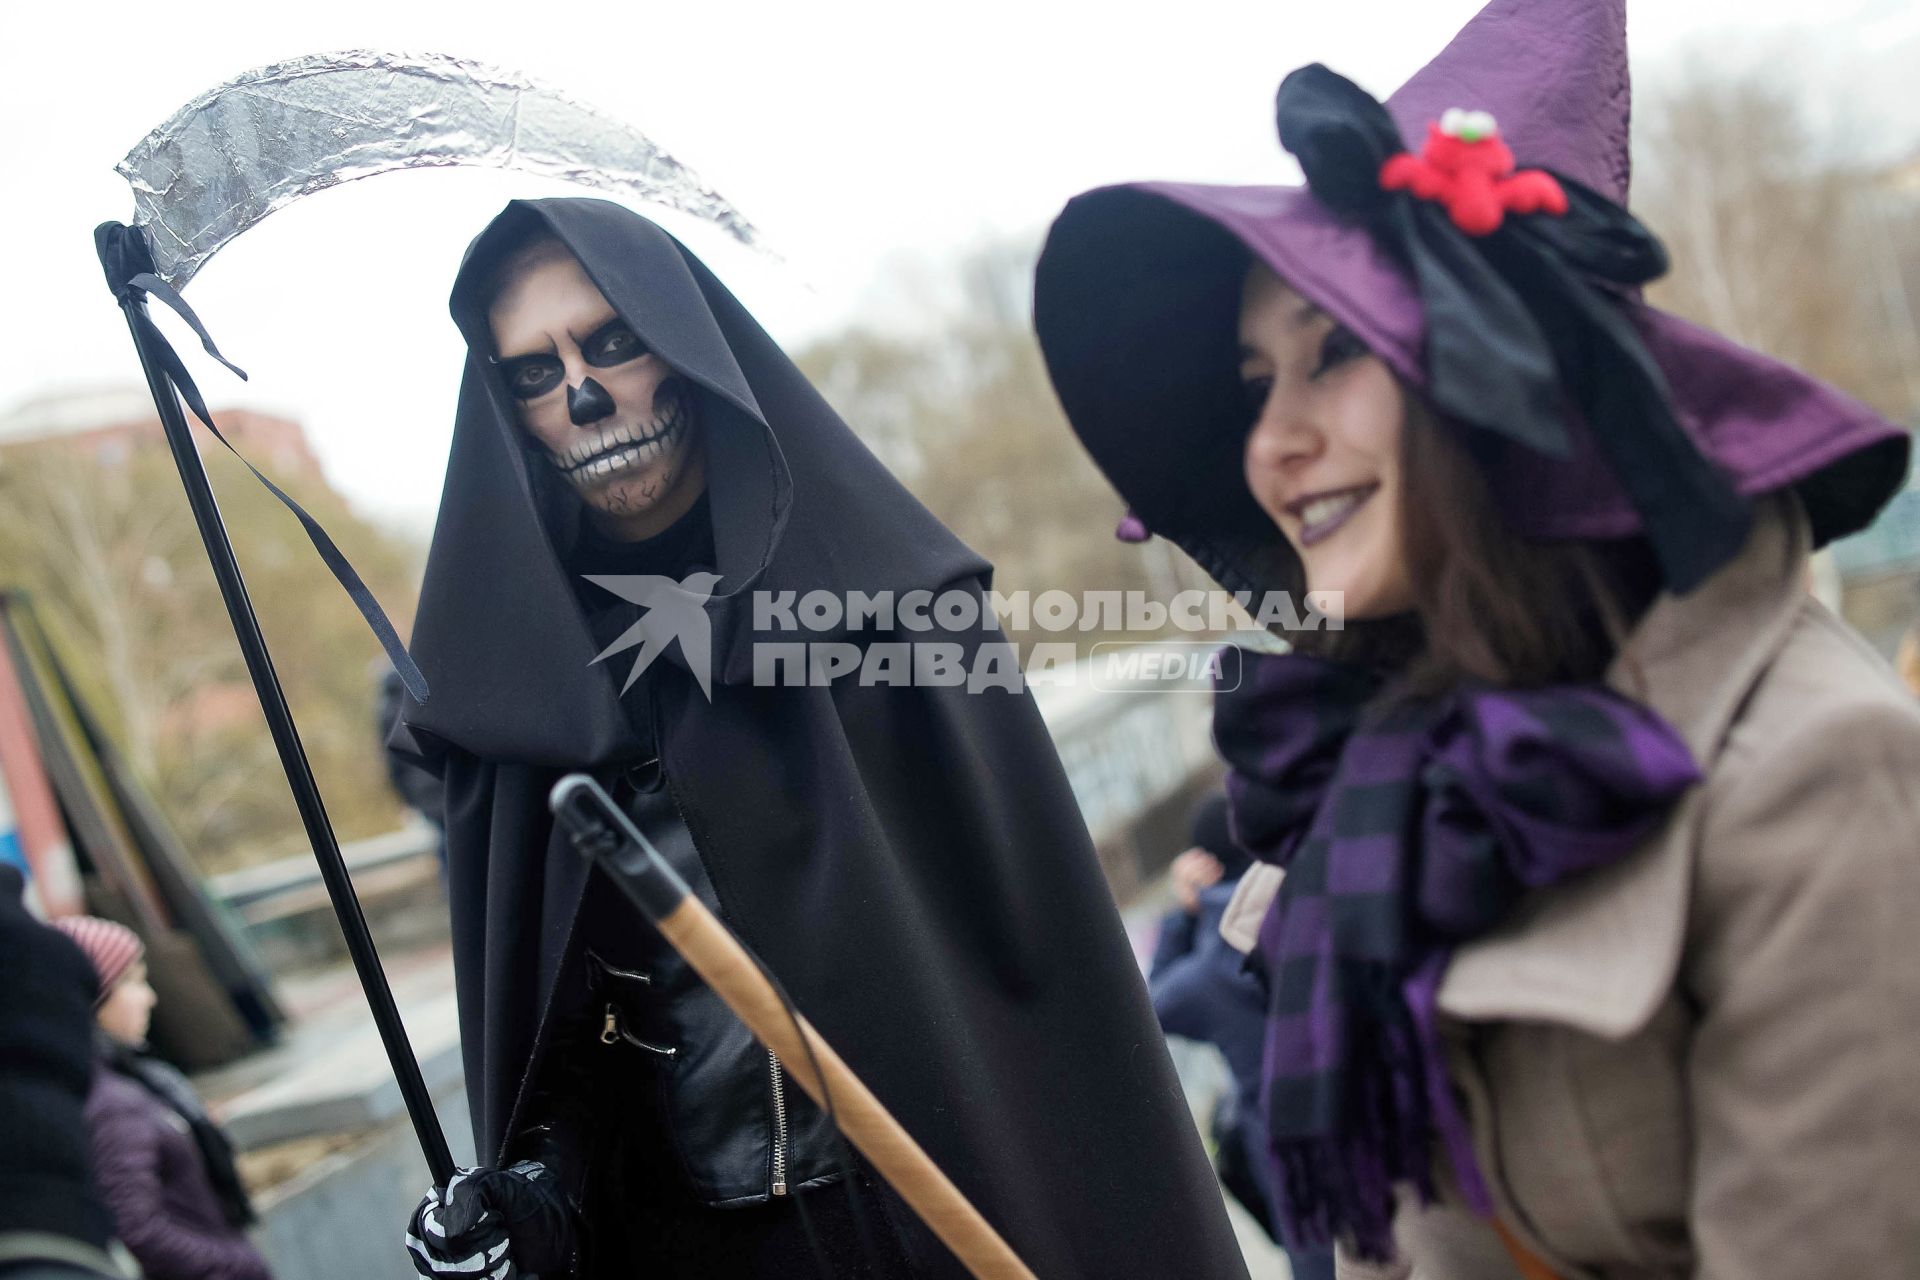 Юноша в костюме смерти и девушка в костюме ведьмы.